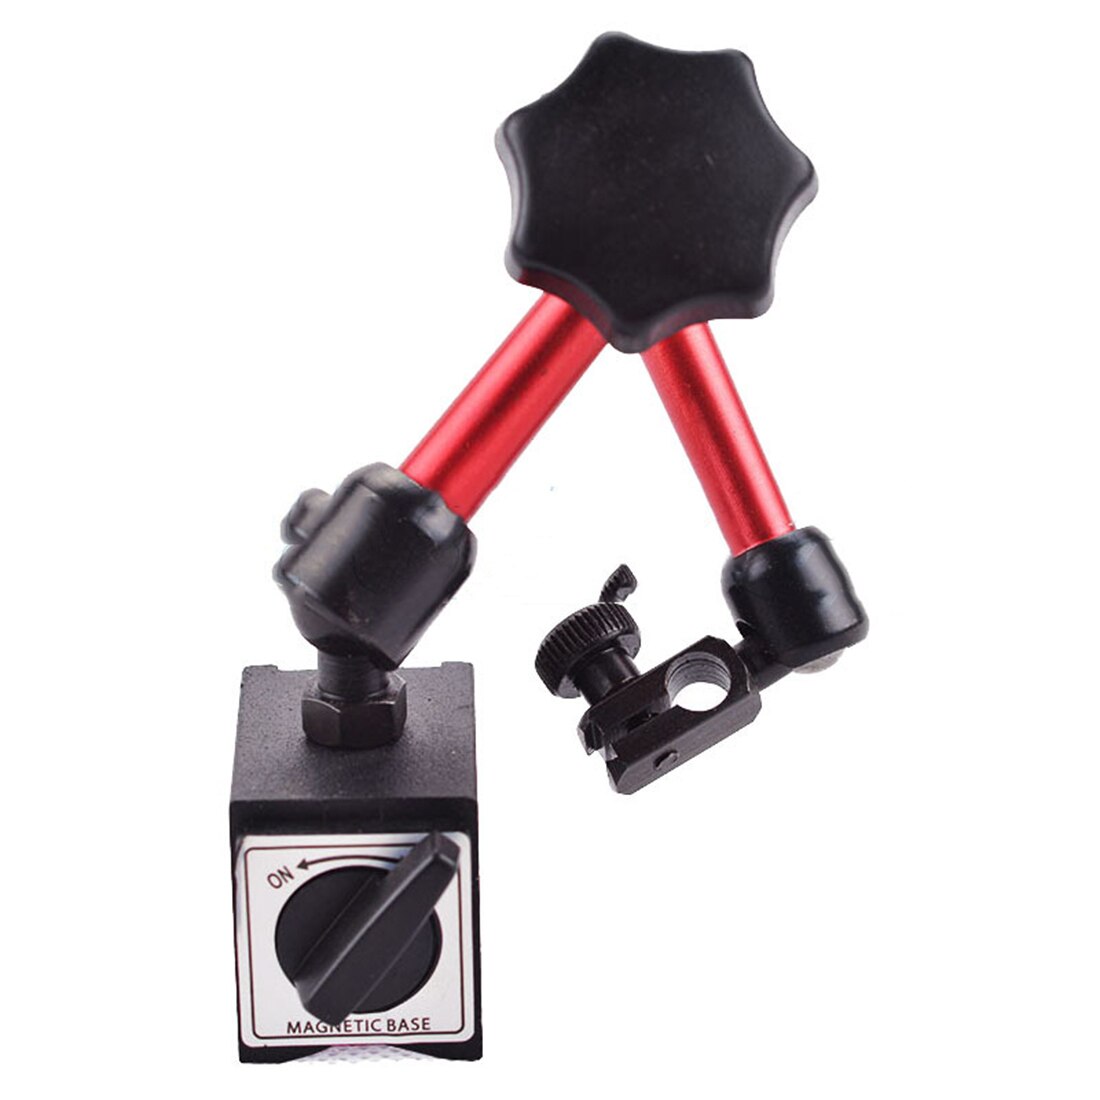 Mini universal fleksibel urskive testindikator støtteholder stativ magnetisk base præcisionsindikatorer måleværktøjssæt